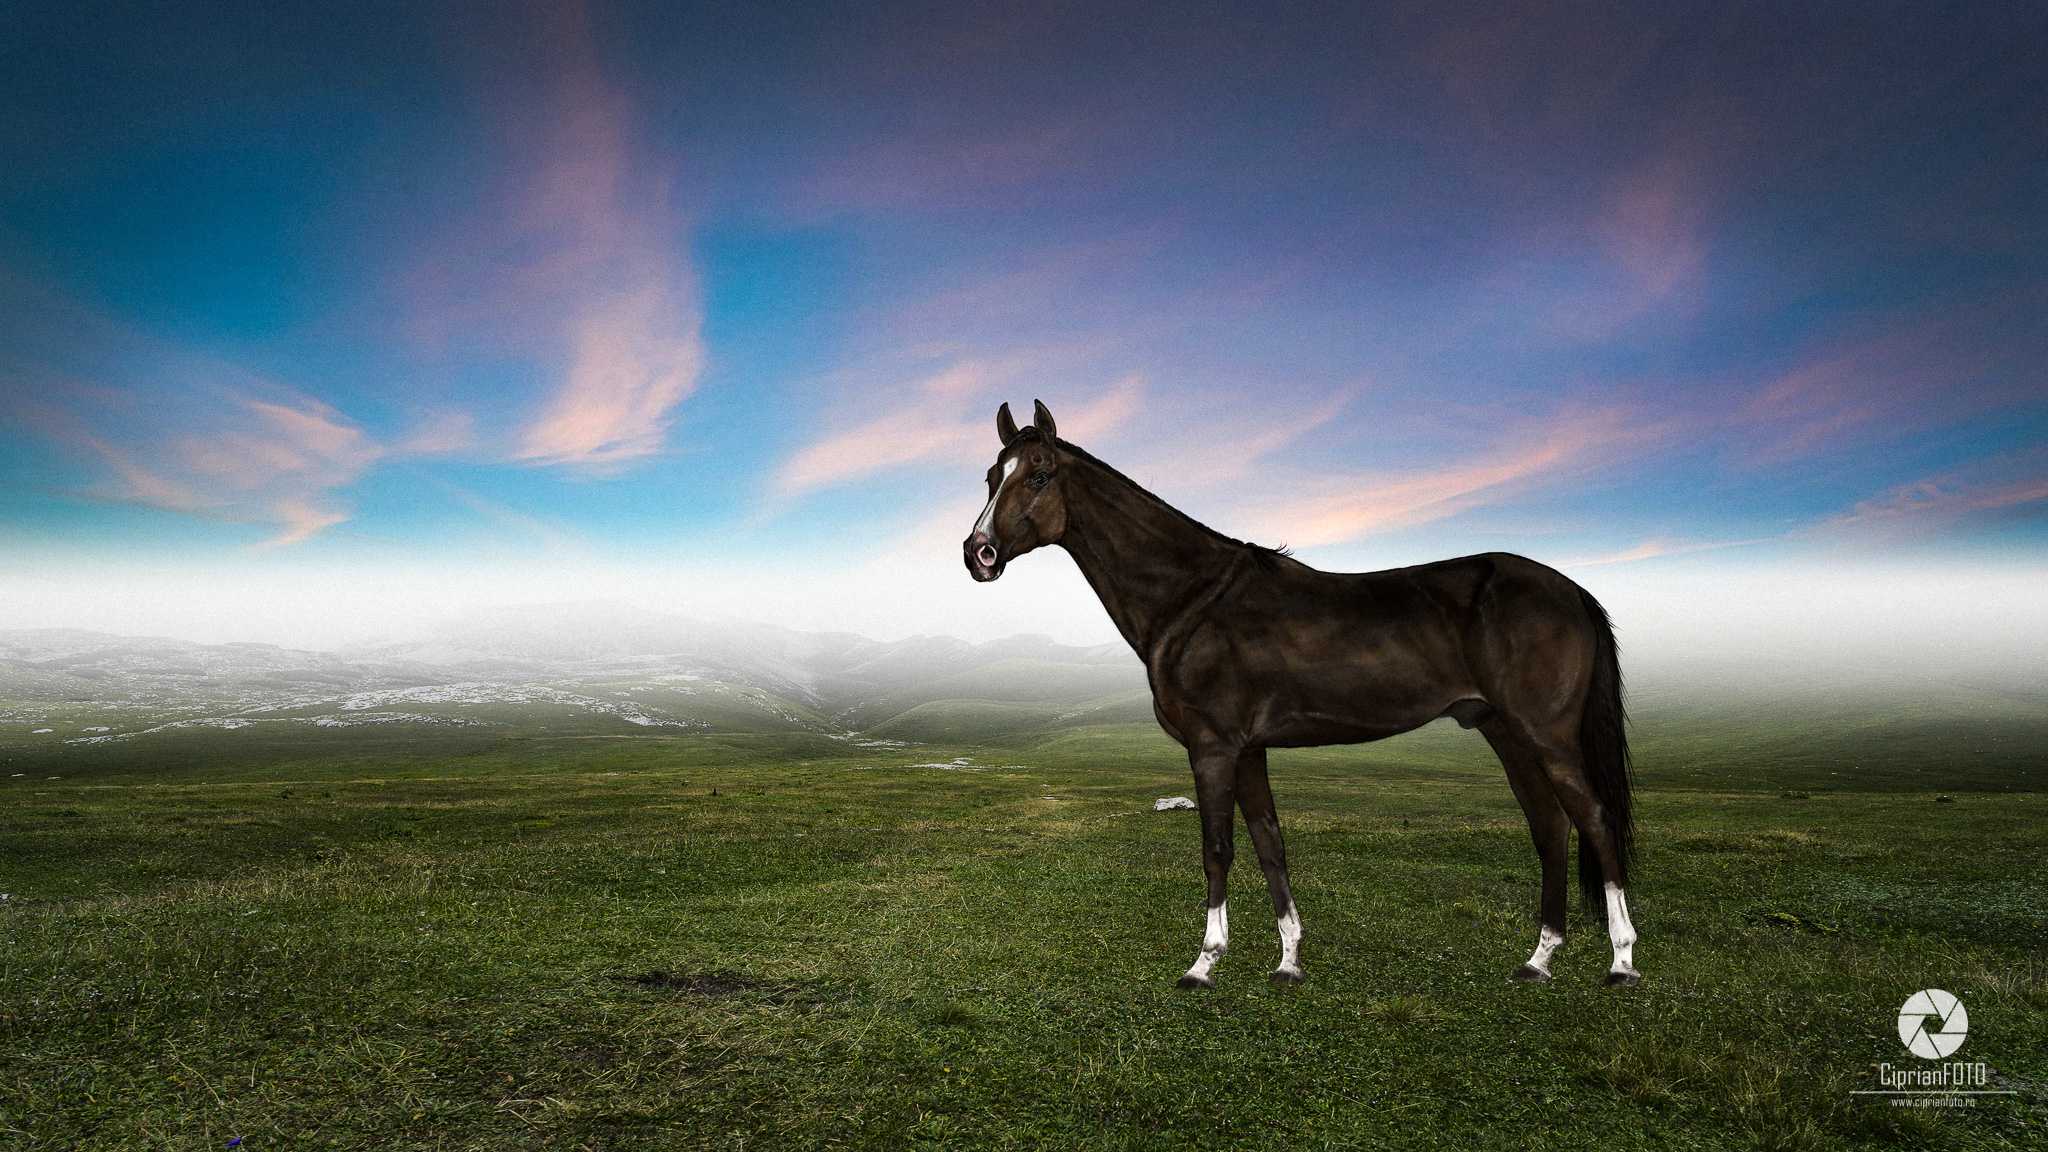 The Horse, Photoshop Manipulation Tutorial, CiprianFOTO